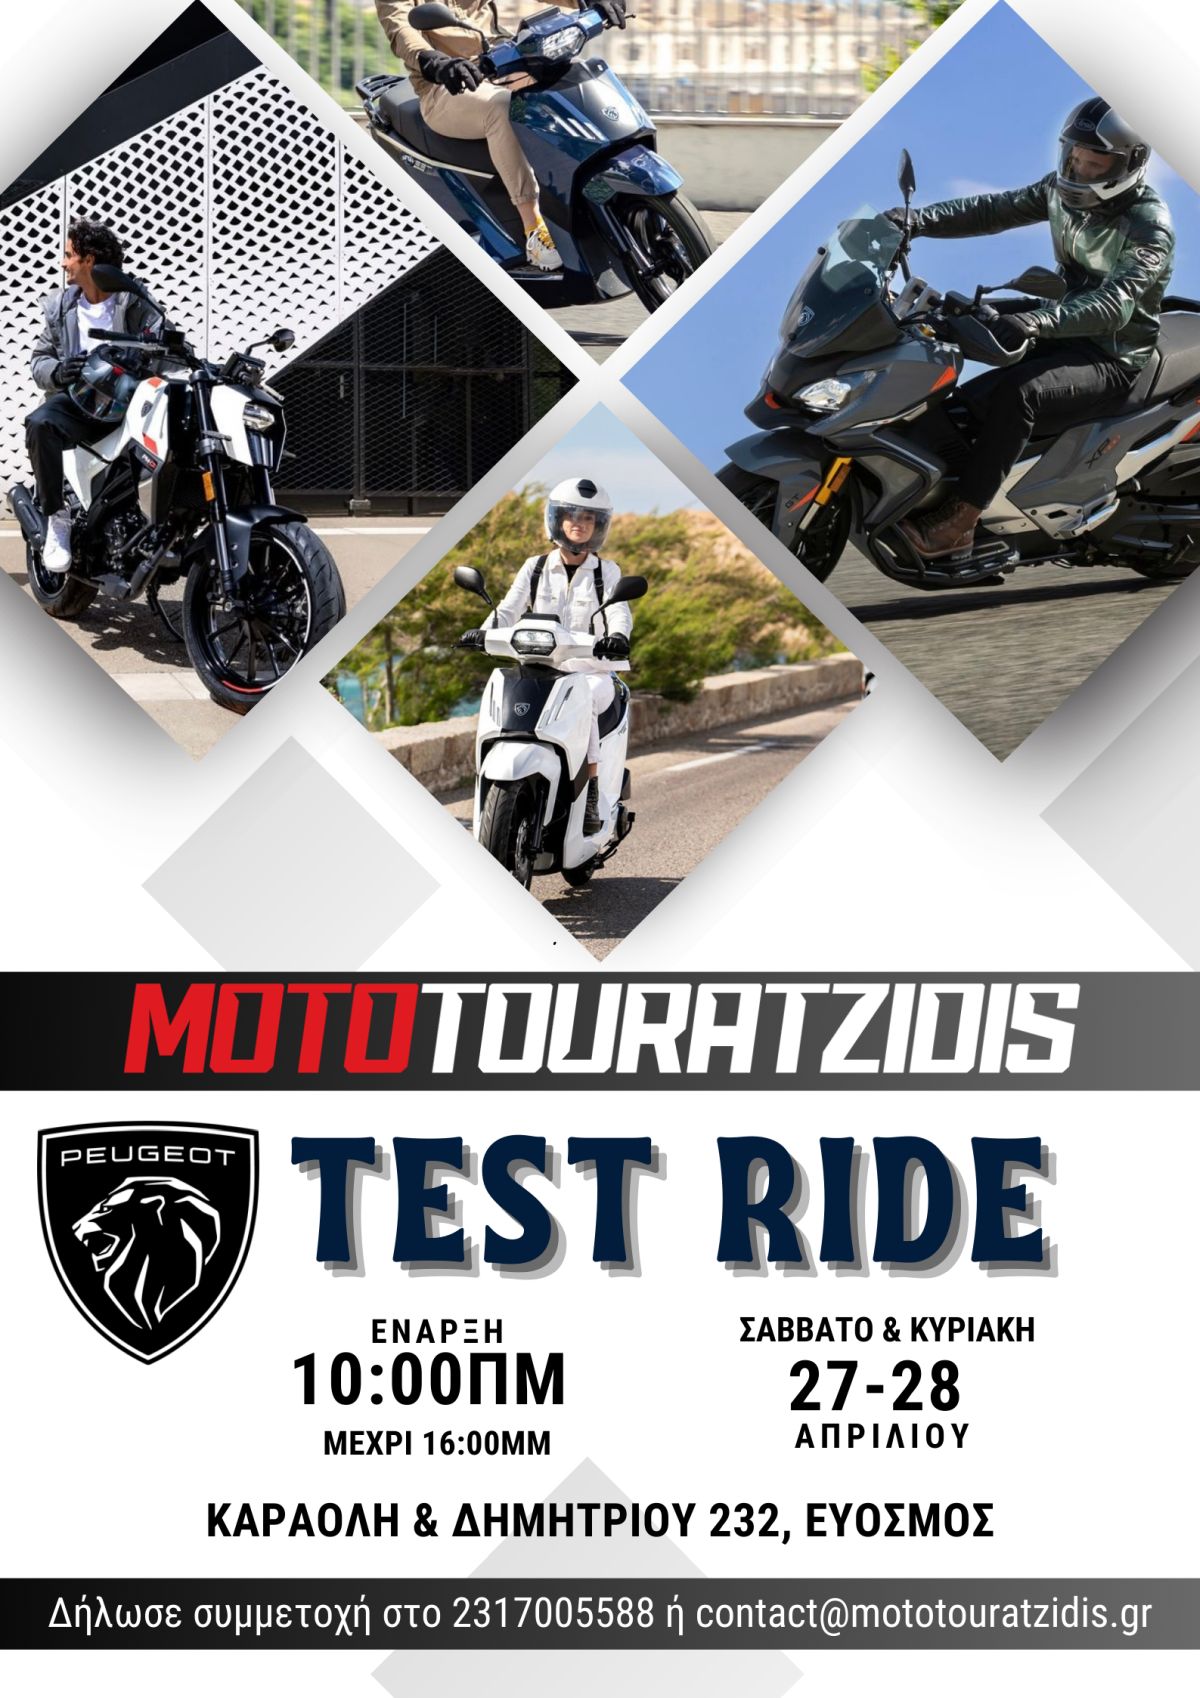 Test Ride Peugeot Motorcycles από την MOTO TOURATZIDIS